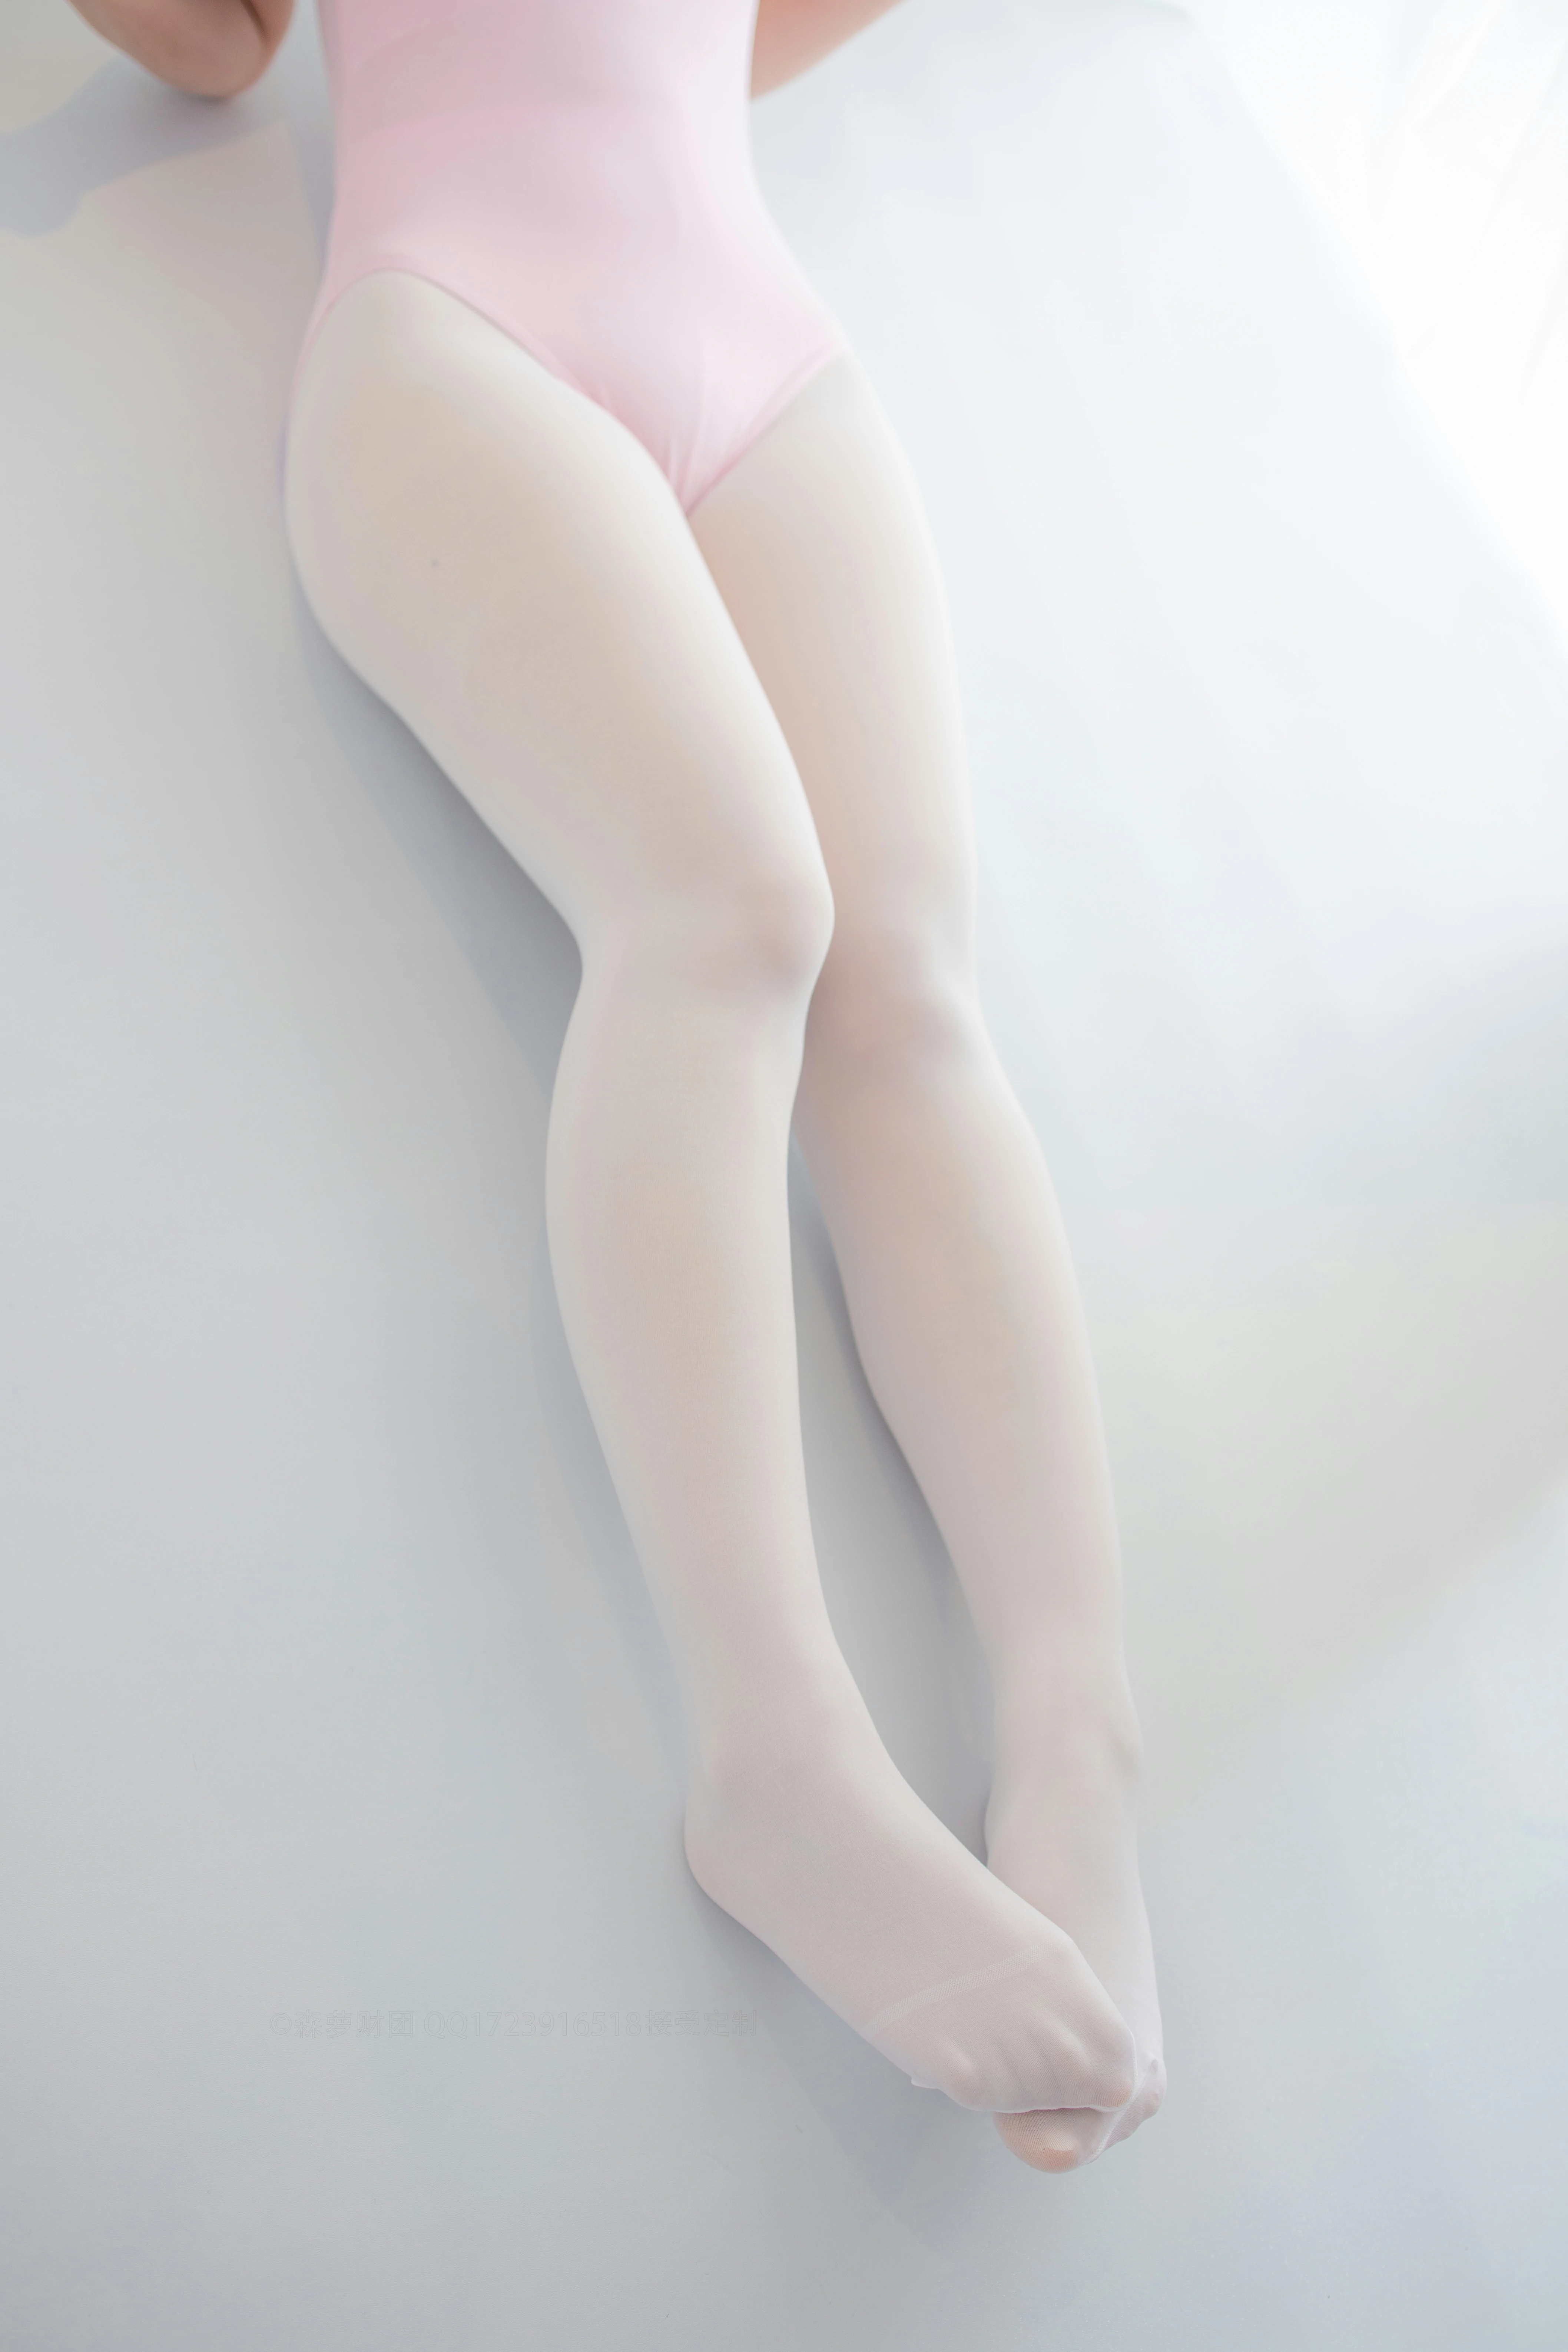 [森萝财团]X-053 清纯可爱小萝莉 粉色连体运动内衣加白色丝袜美腿玉足性感私房写真集,